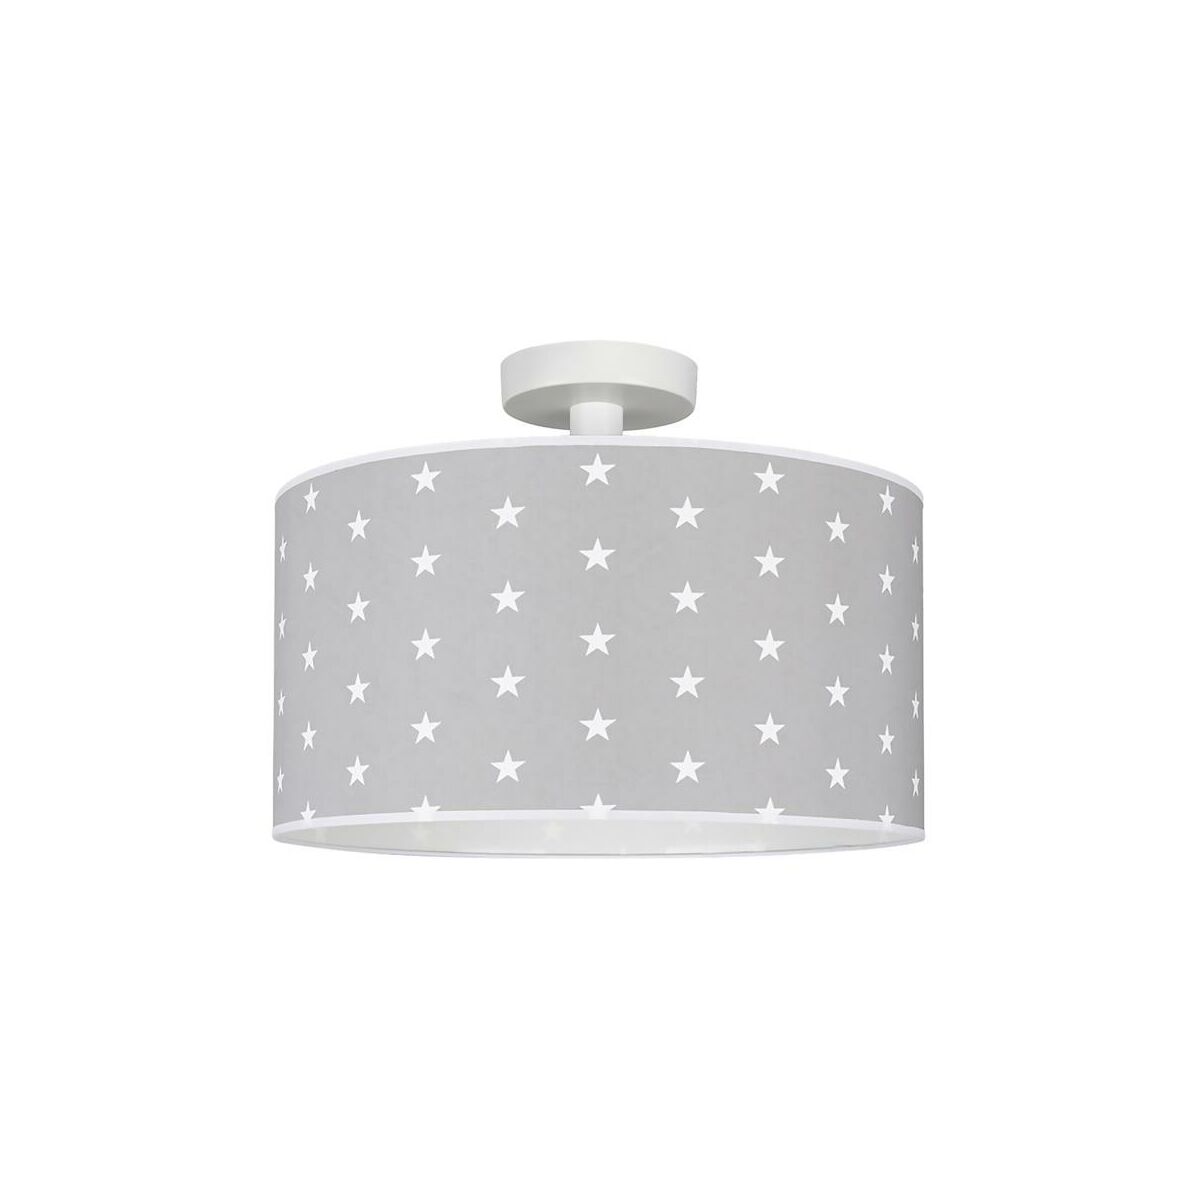 Lampa sufitowa Stelo szara w białe gwiazdki E27 Spot-Light